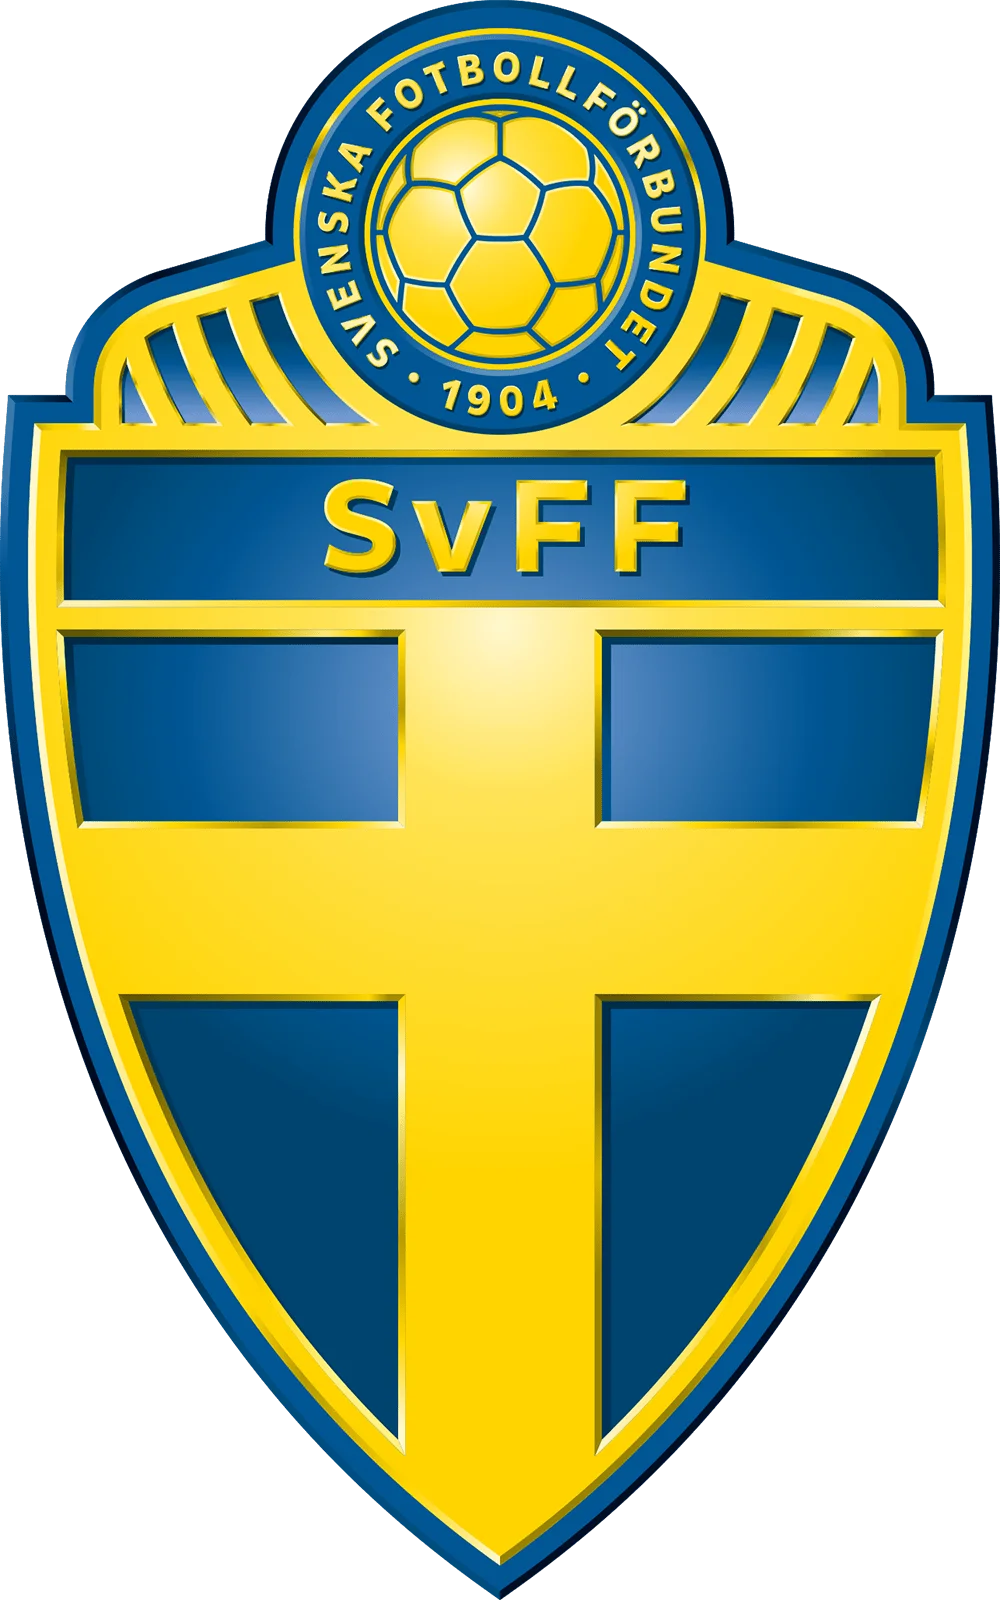 Svenska Fotbollförbundet logotyp